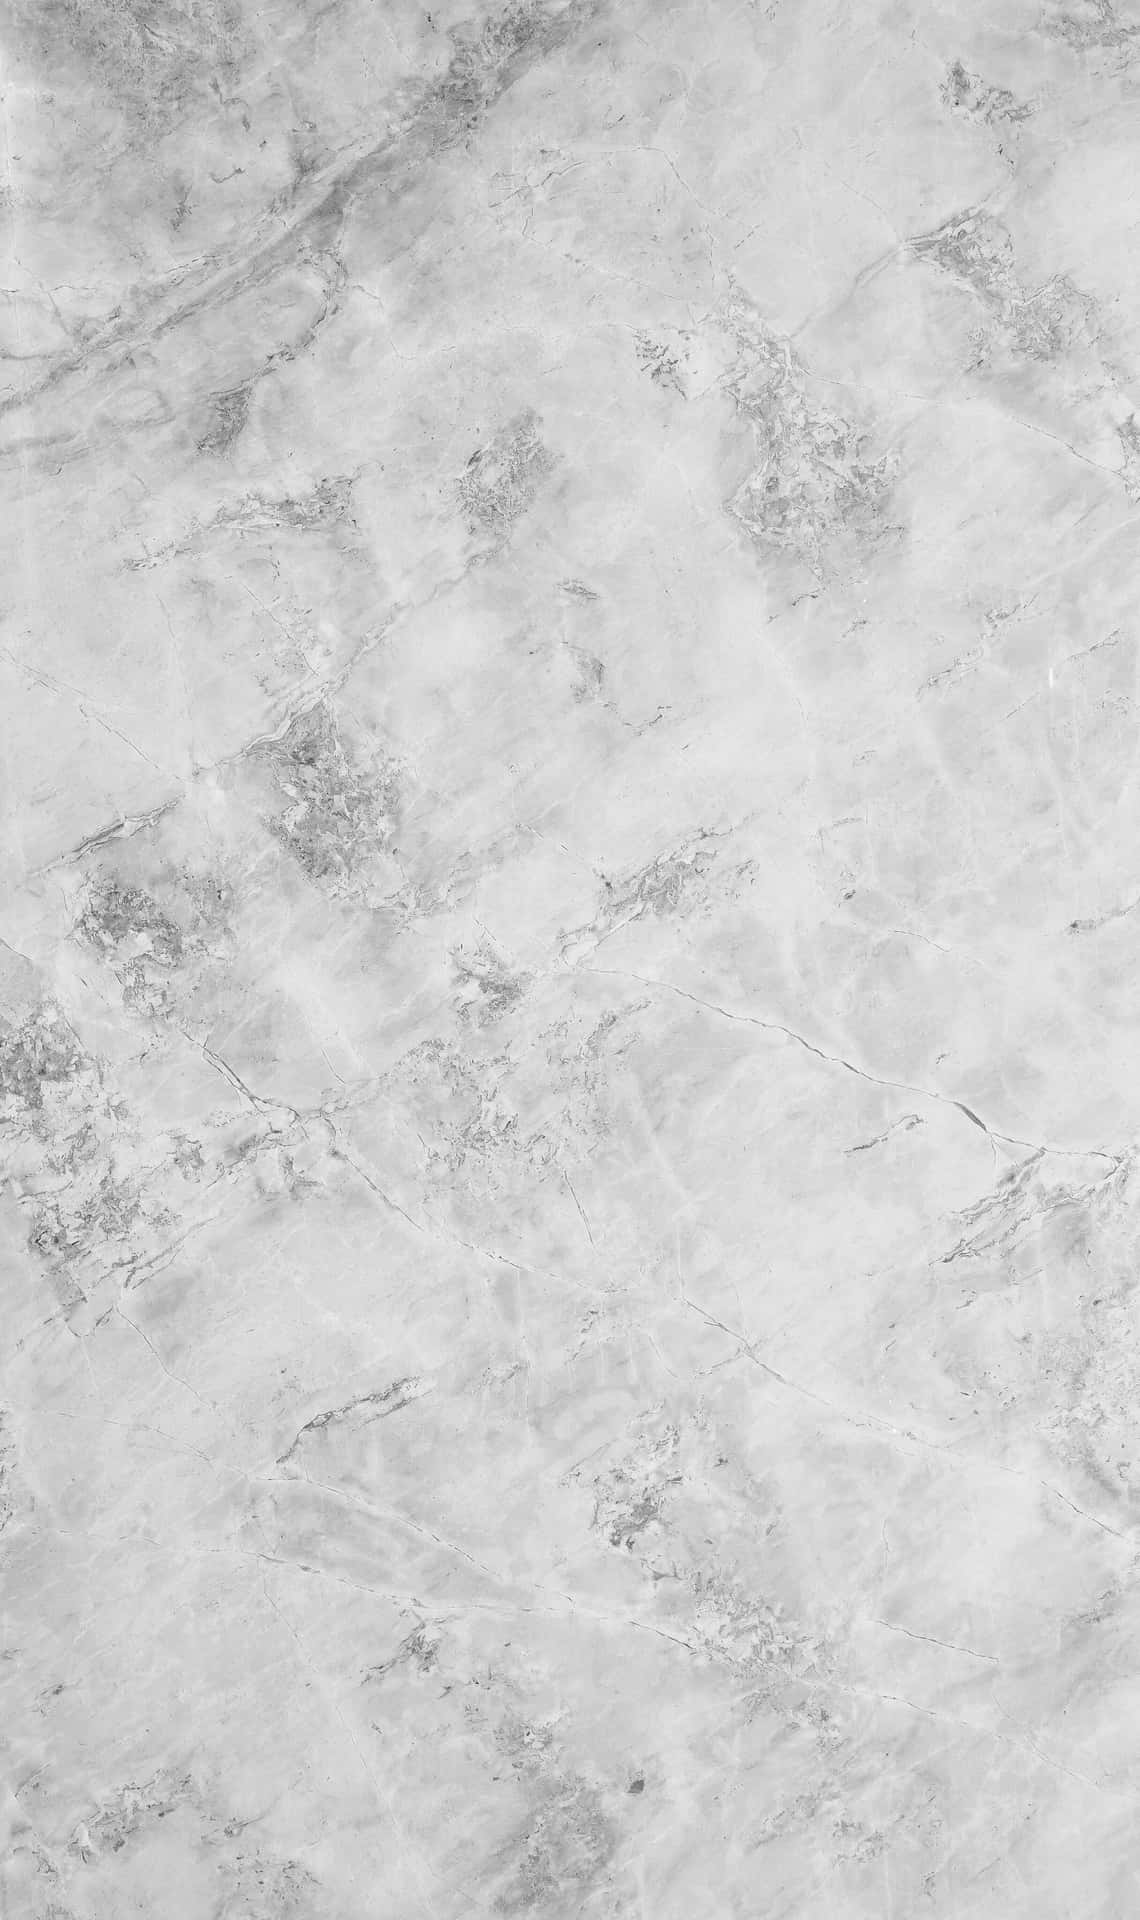 White Image Background Gray Marks